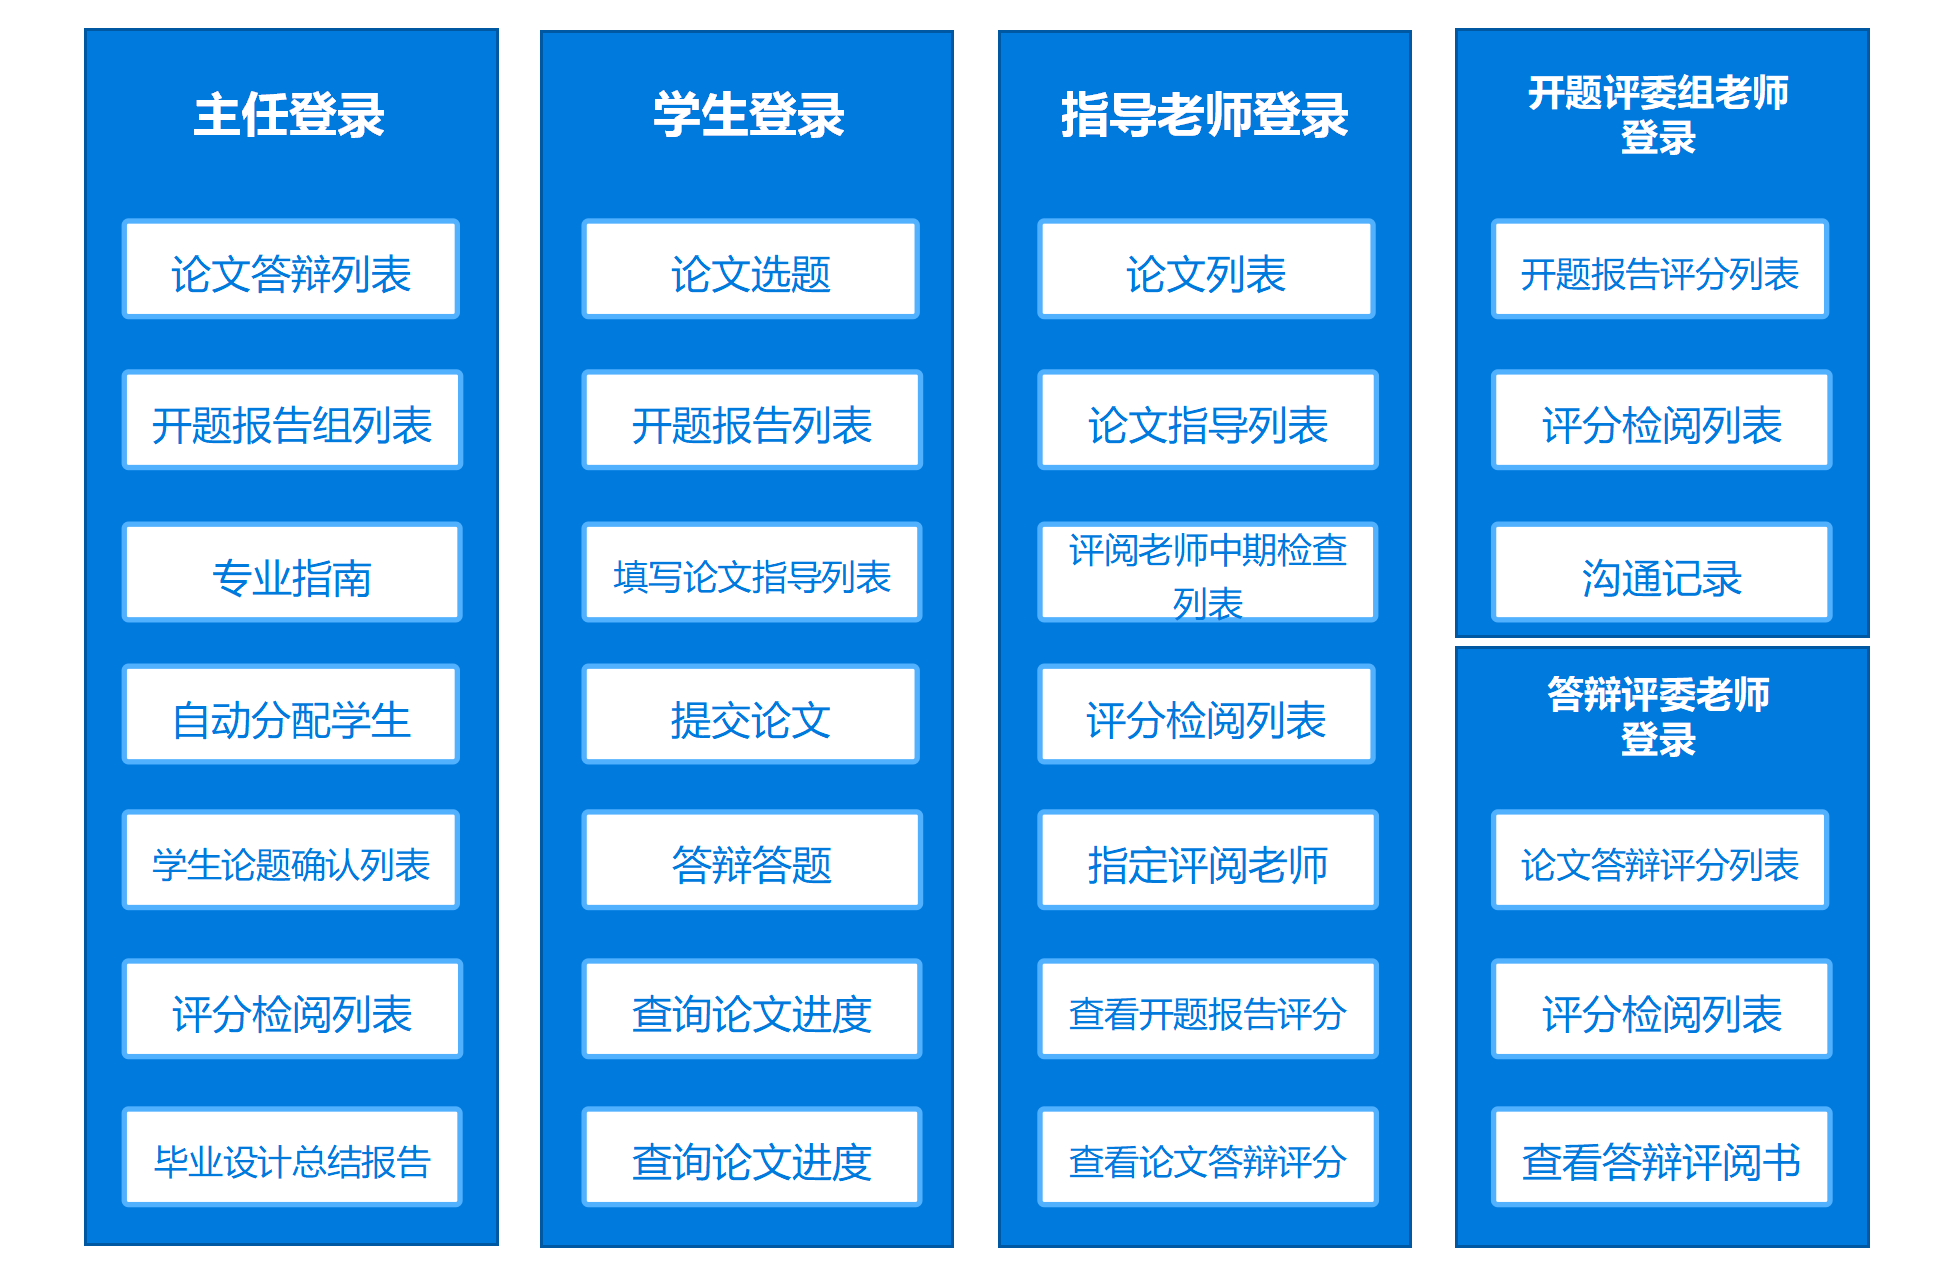 上海商学院论文答辩系统-演示图-1